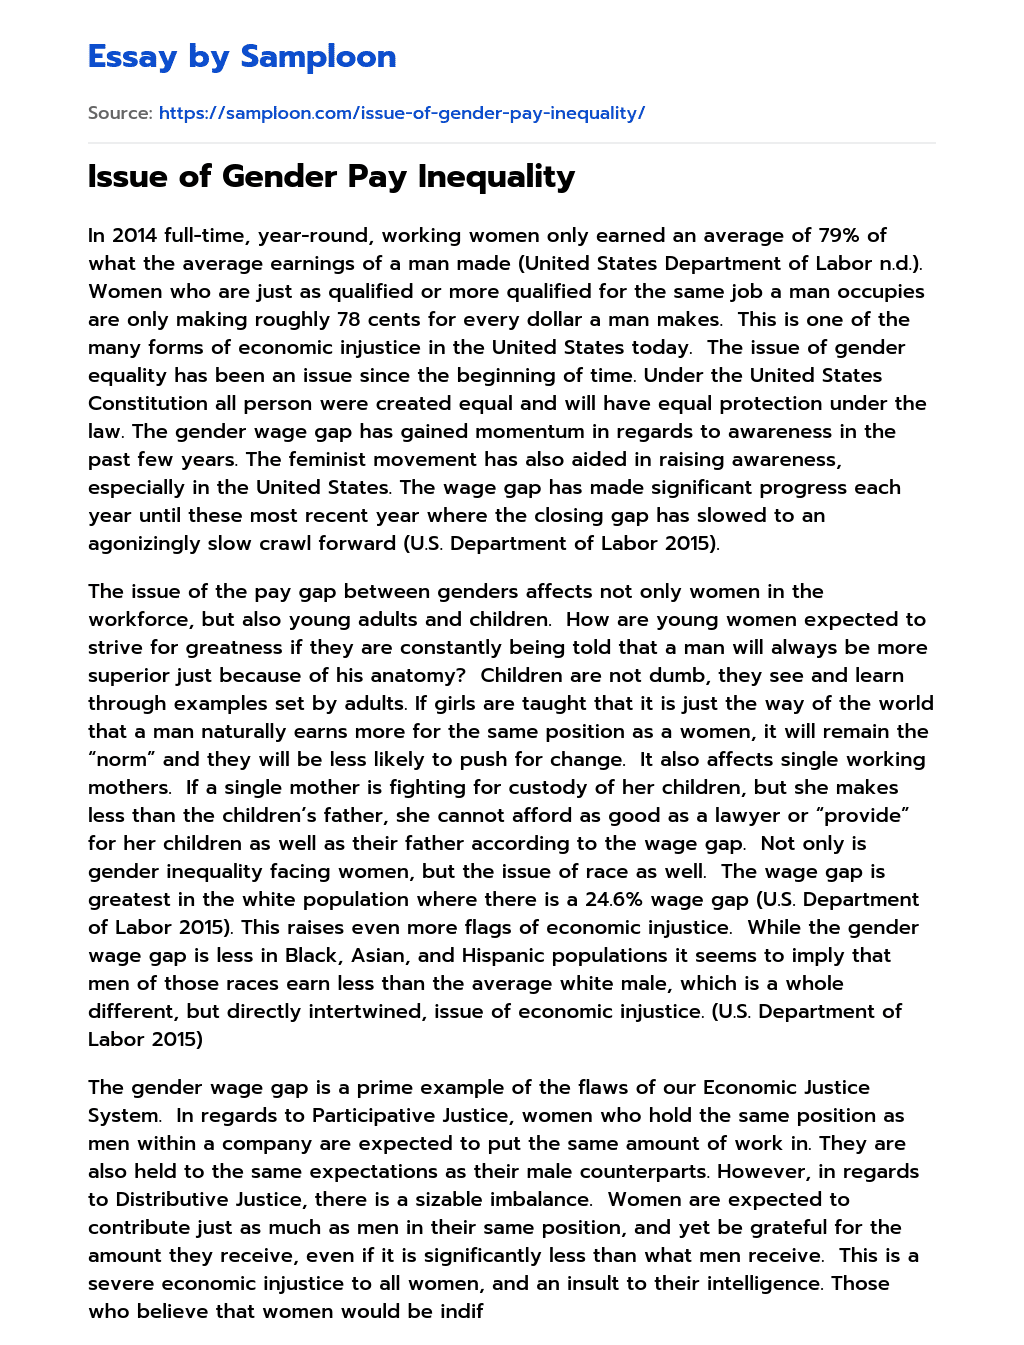 gender wage gap essay outline